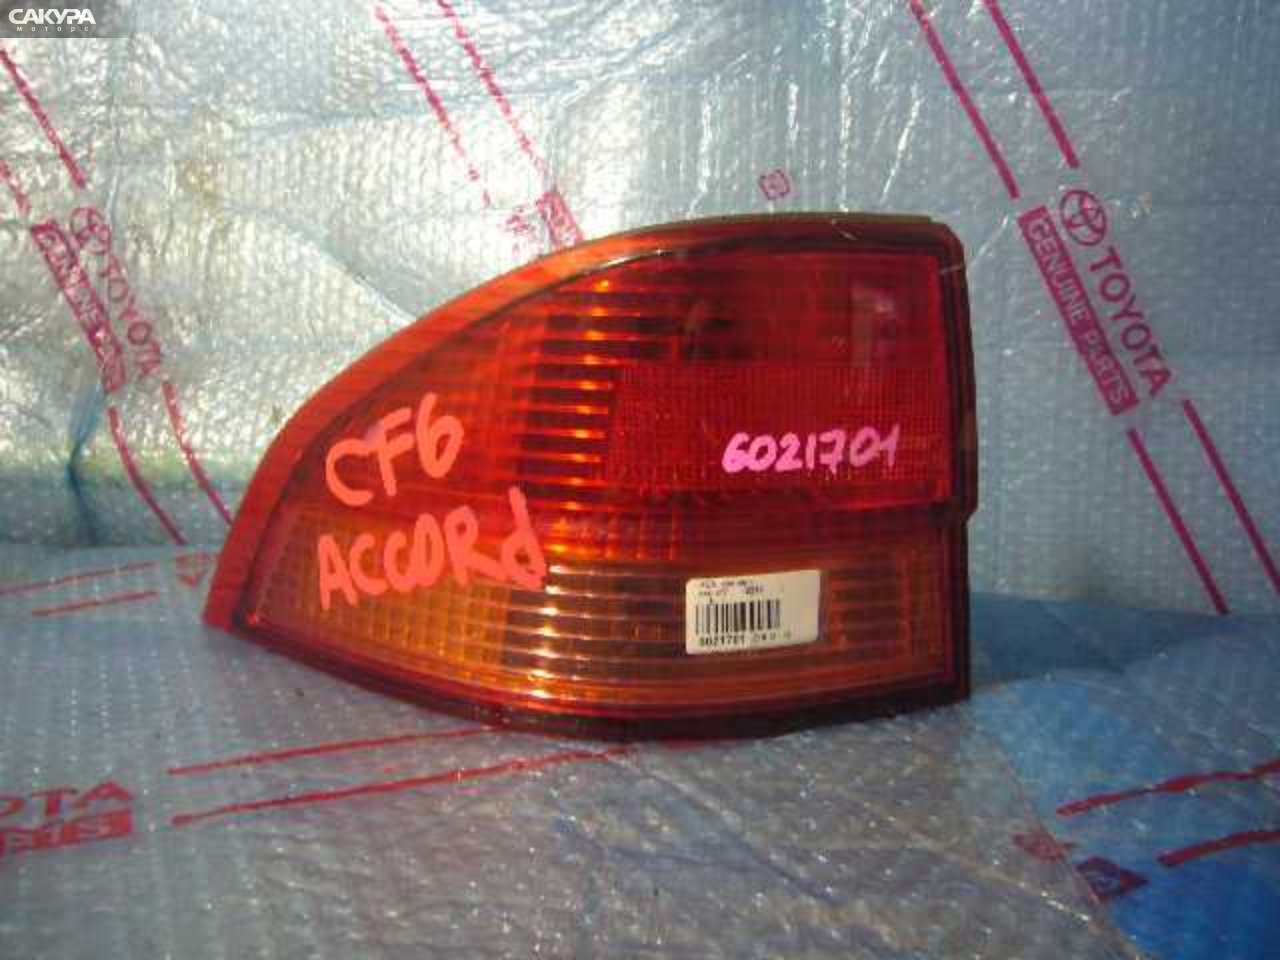 Фонарь стоп-сигнала левый Honda Accord Wagon CF7 R2232: купить в Сакура Кемерово.